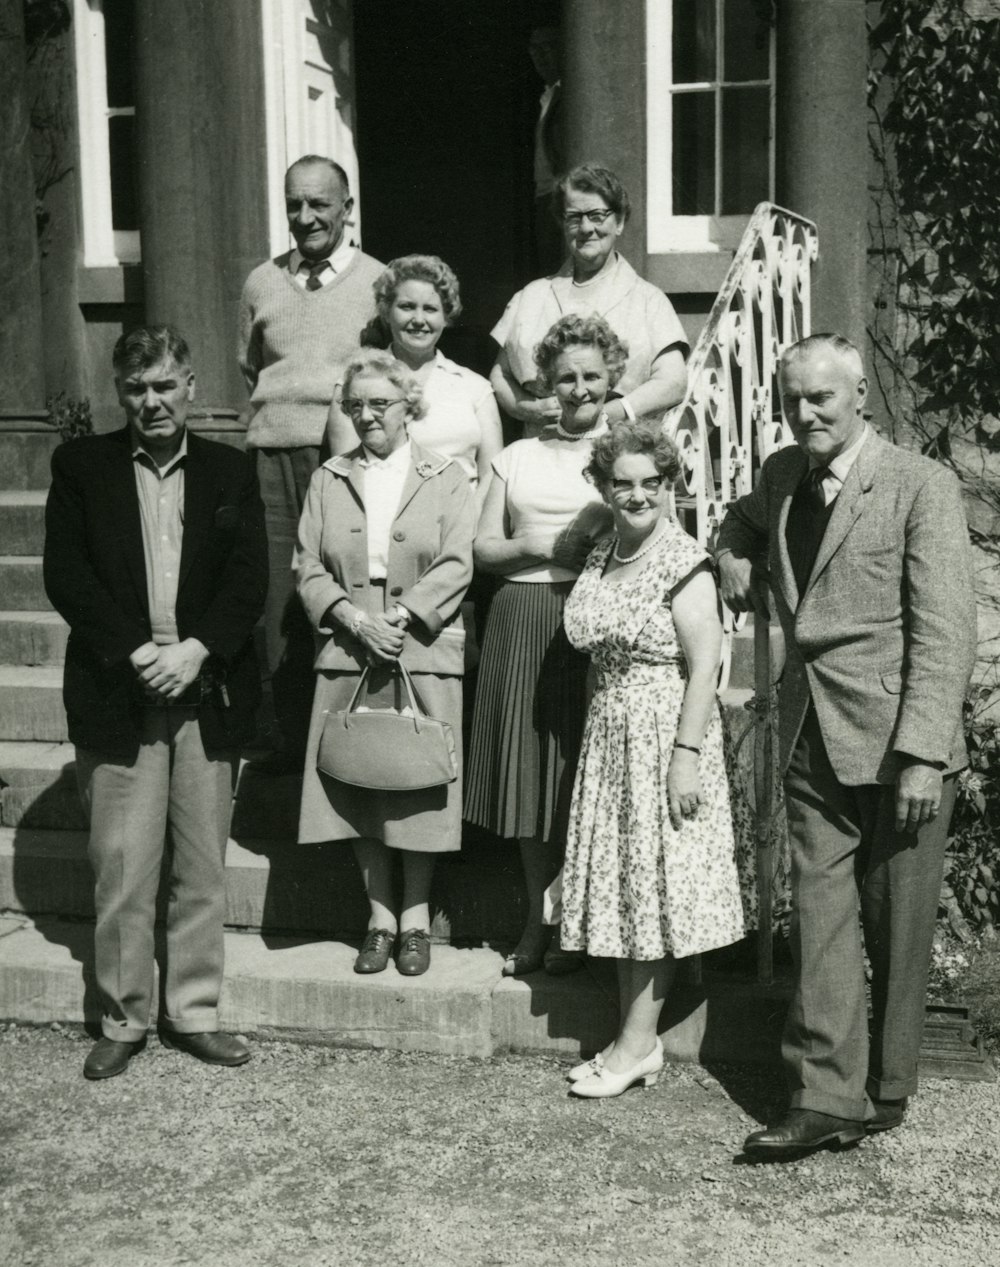 Foto in scala di grigi della famiglia in piedi sul campo erboso